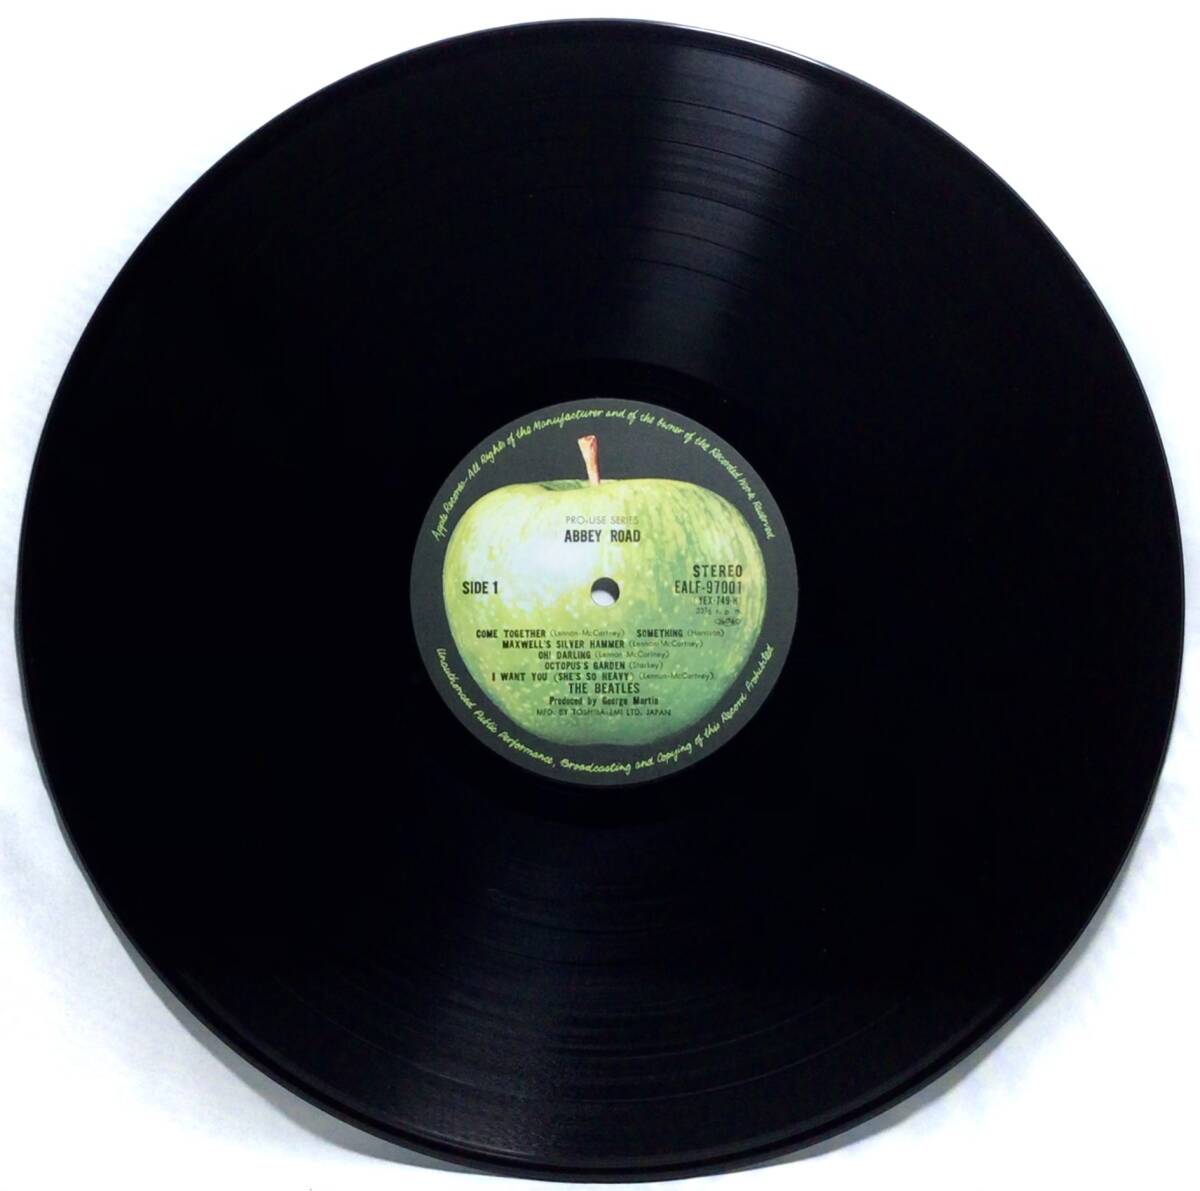 【日LPプロユース】 ザ・ビートルズ THE BEATLES アビイ・ロード ABBEY ROAD 1978 PRO-USE SERIES LPレコード EALF-97001 シリーズ 試聴済の画像6